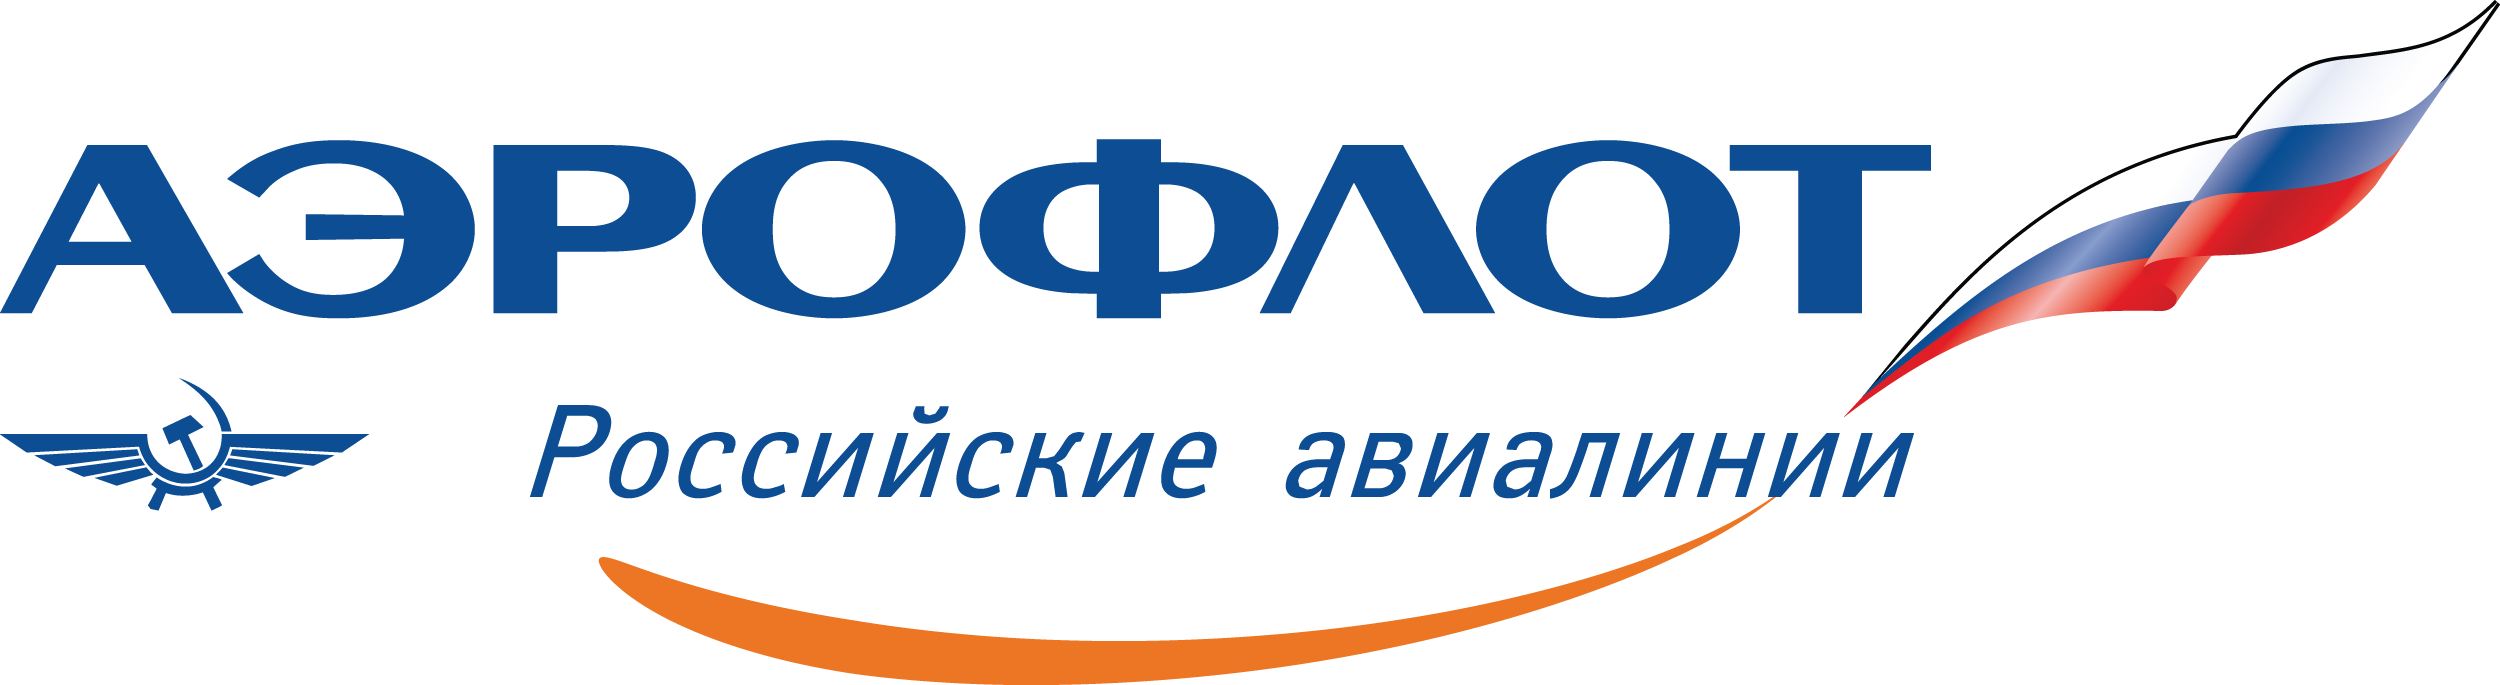 Aeroflot: Субсидированные тарифы 2020